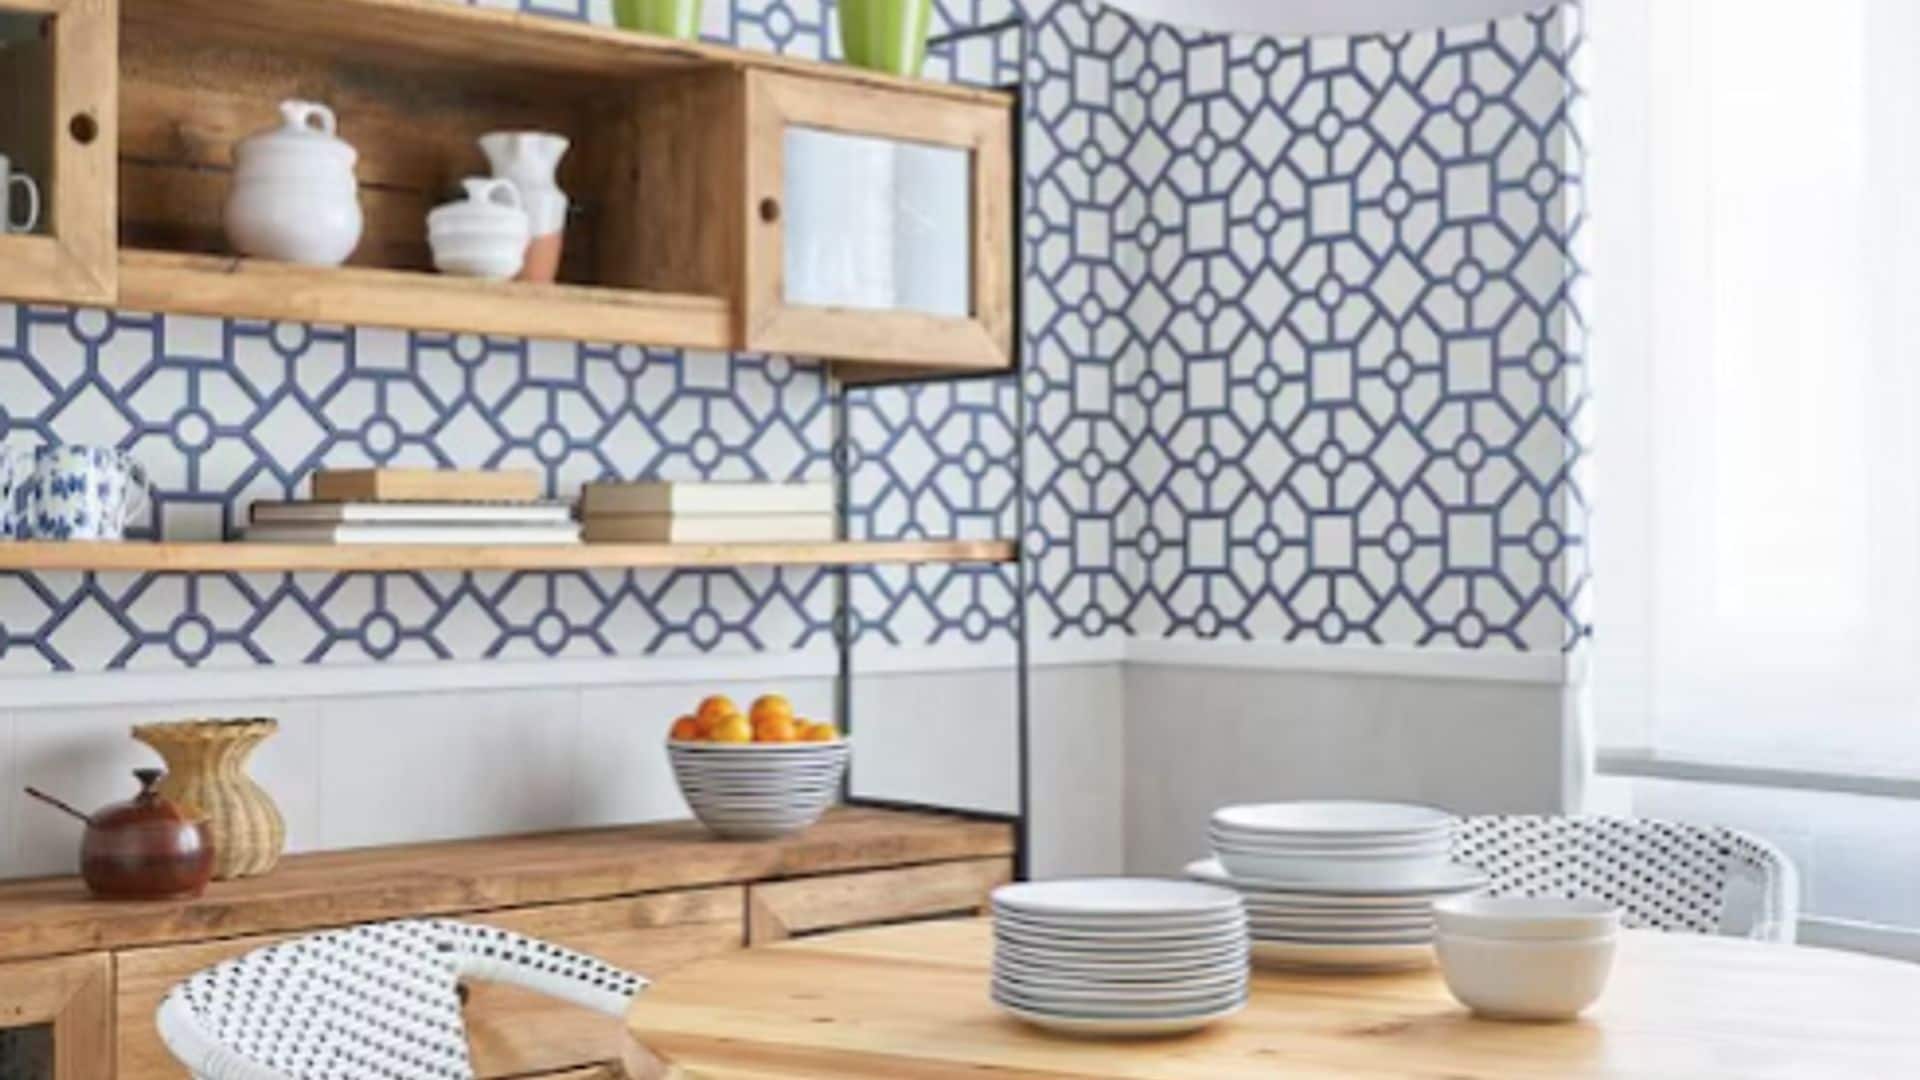 Decorar las paredes de la cocina con papel pintado es tendencia